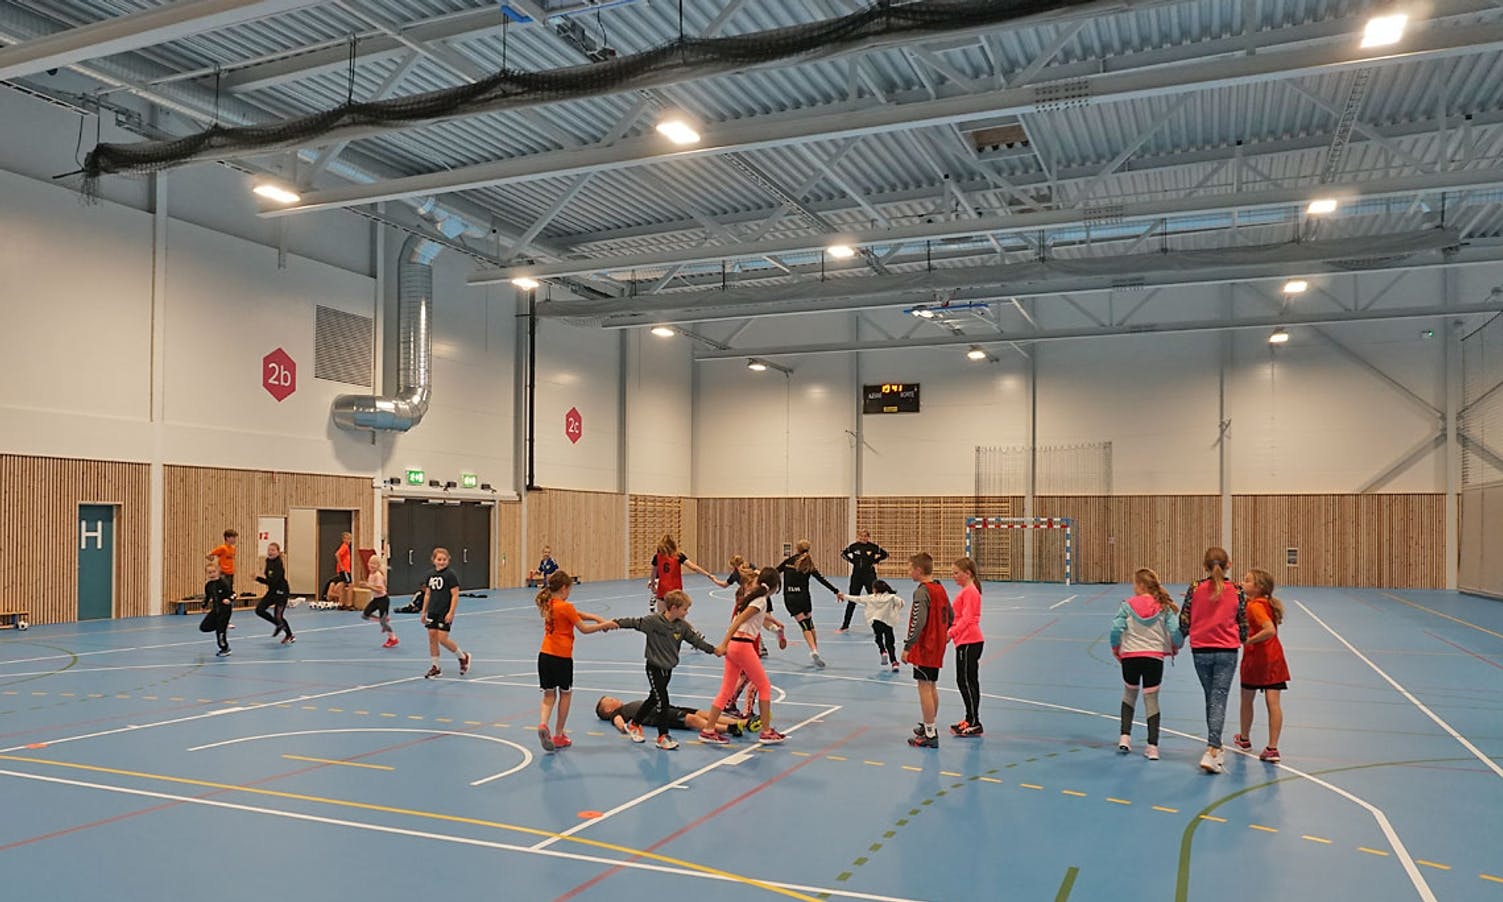 Handballskulen handlar sjølvsagt mest om handball. (Foto: KOG)